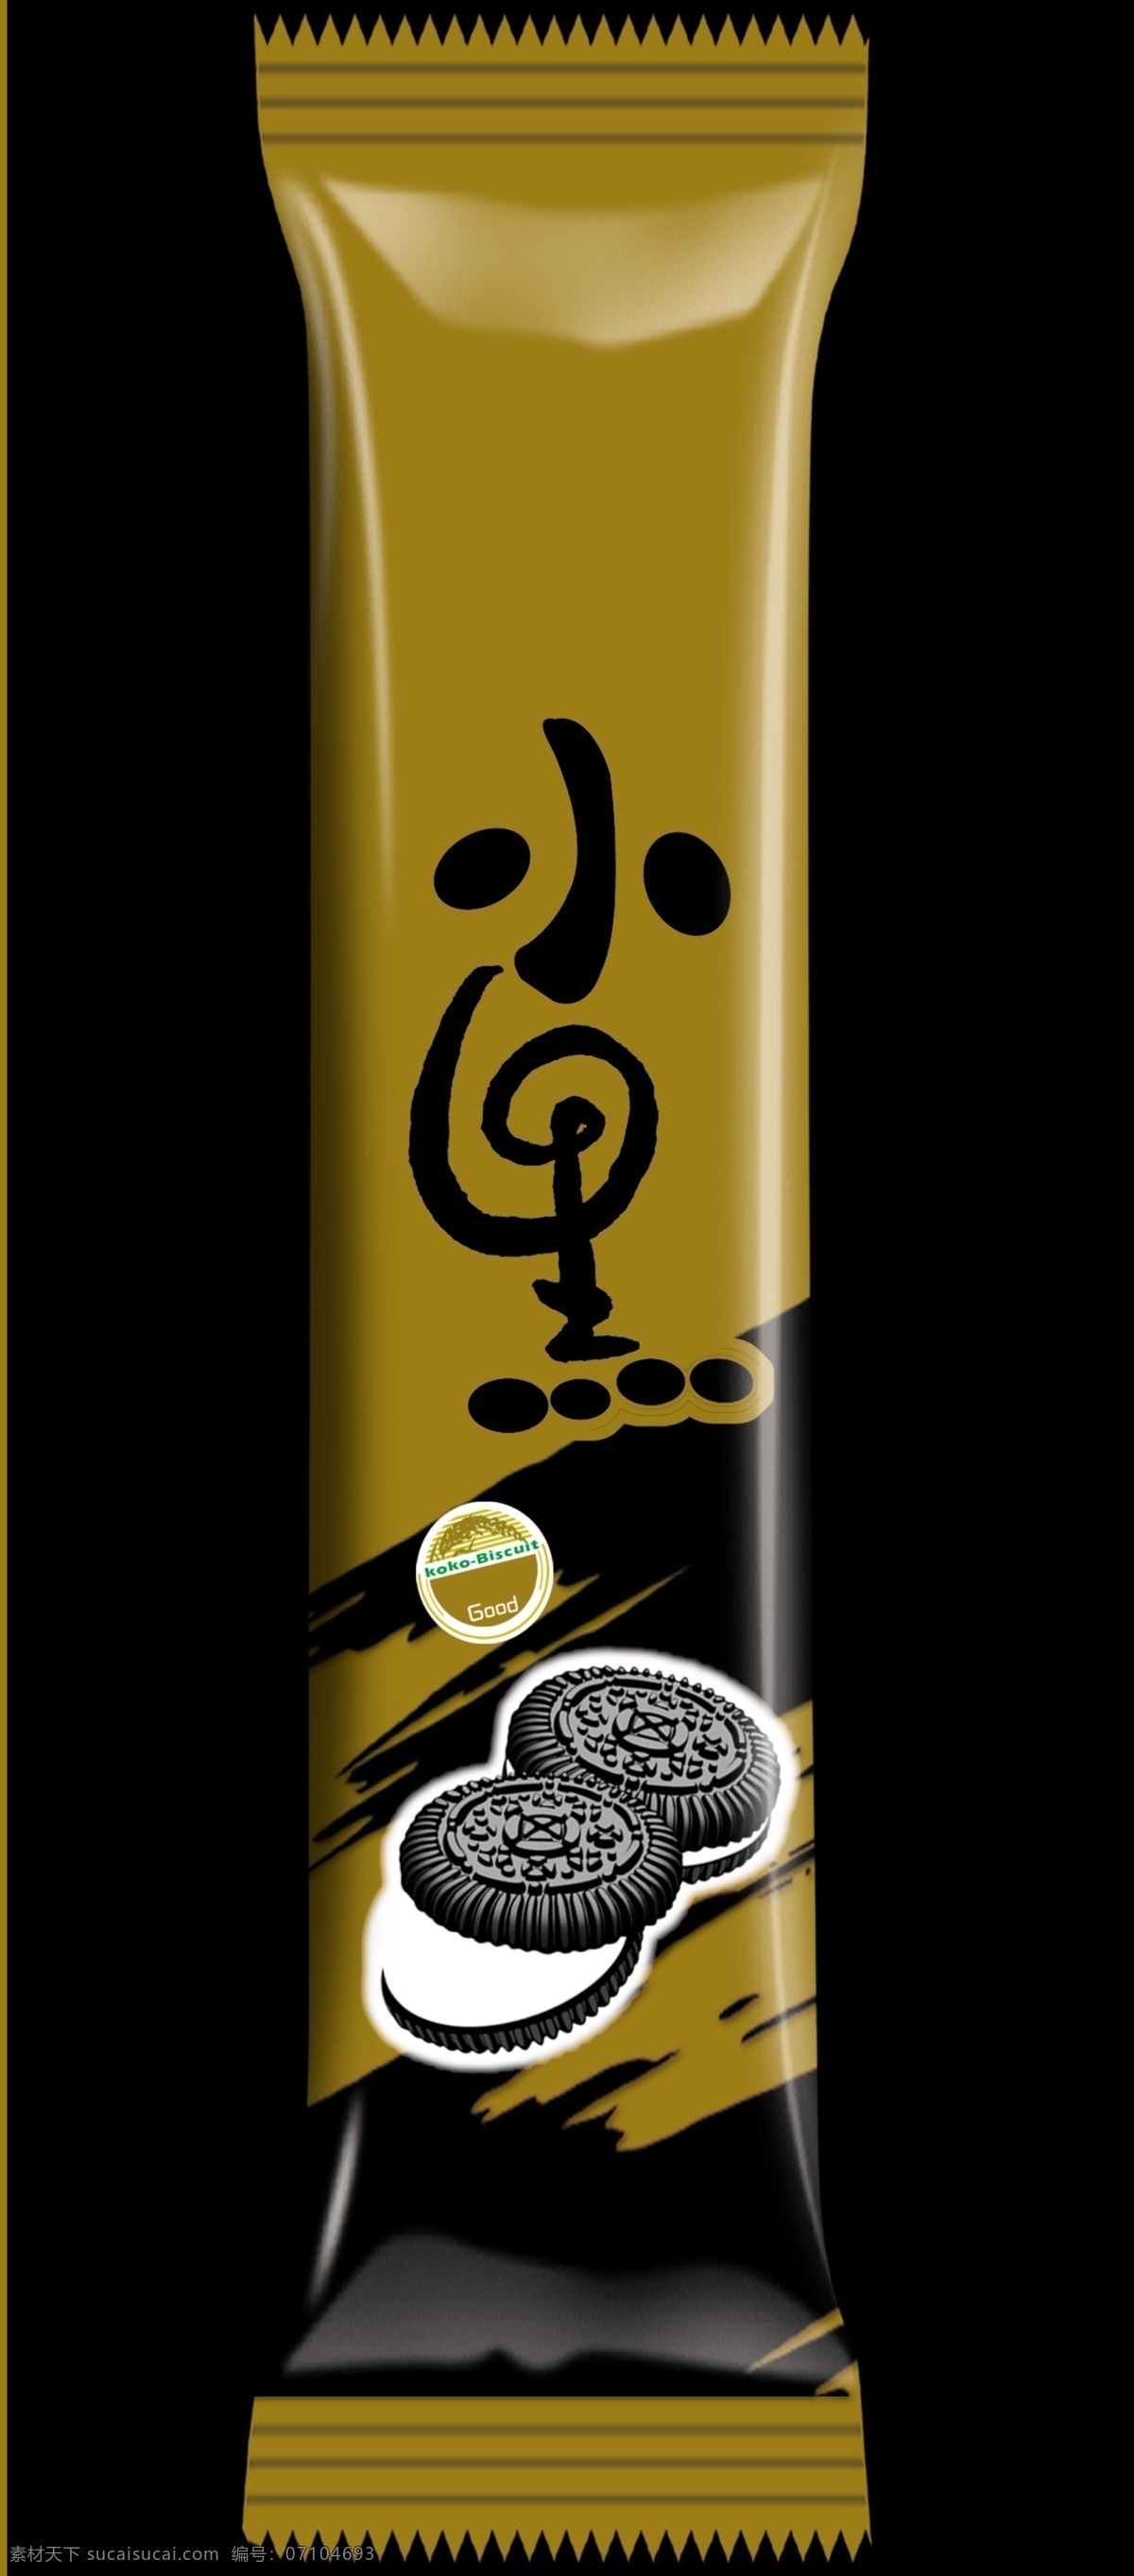 饼干包装 饼干 小黑 巧克力 条形饼干 包装设计 广告设计模板 源文件